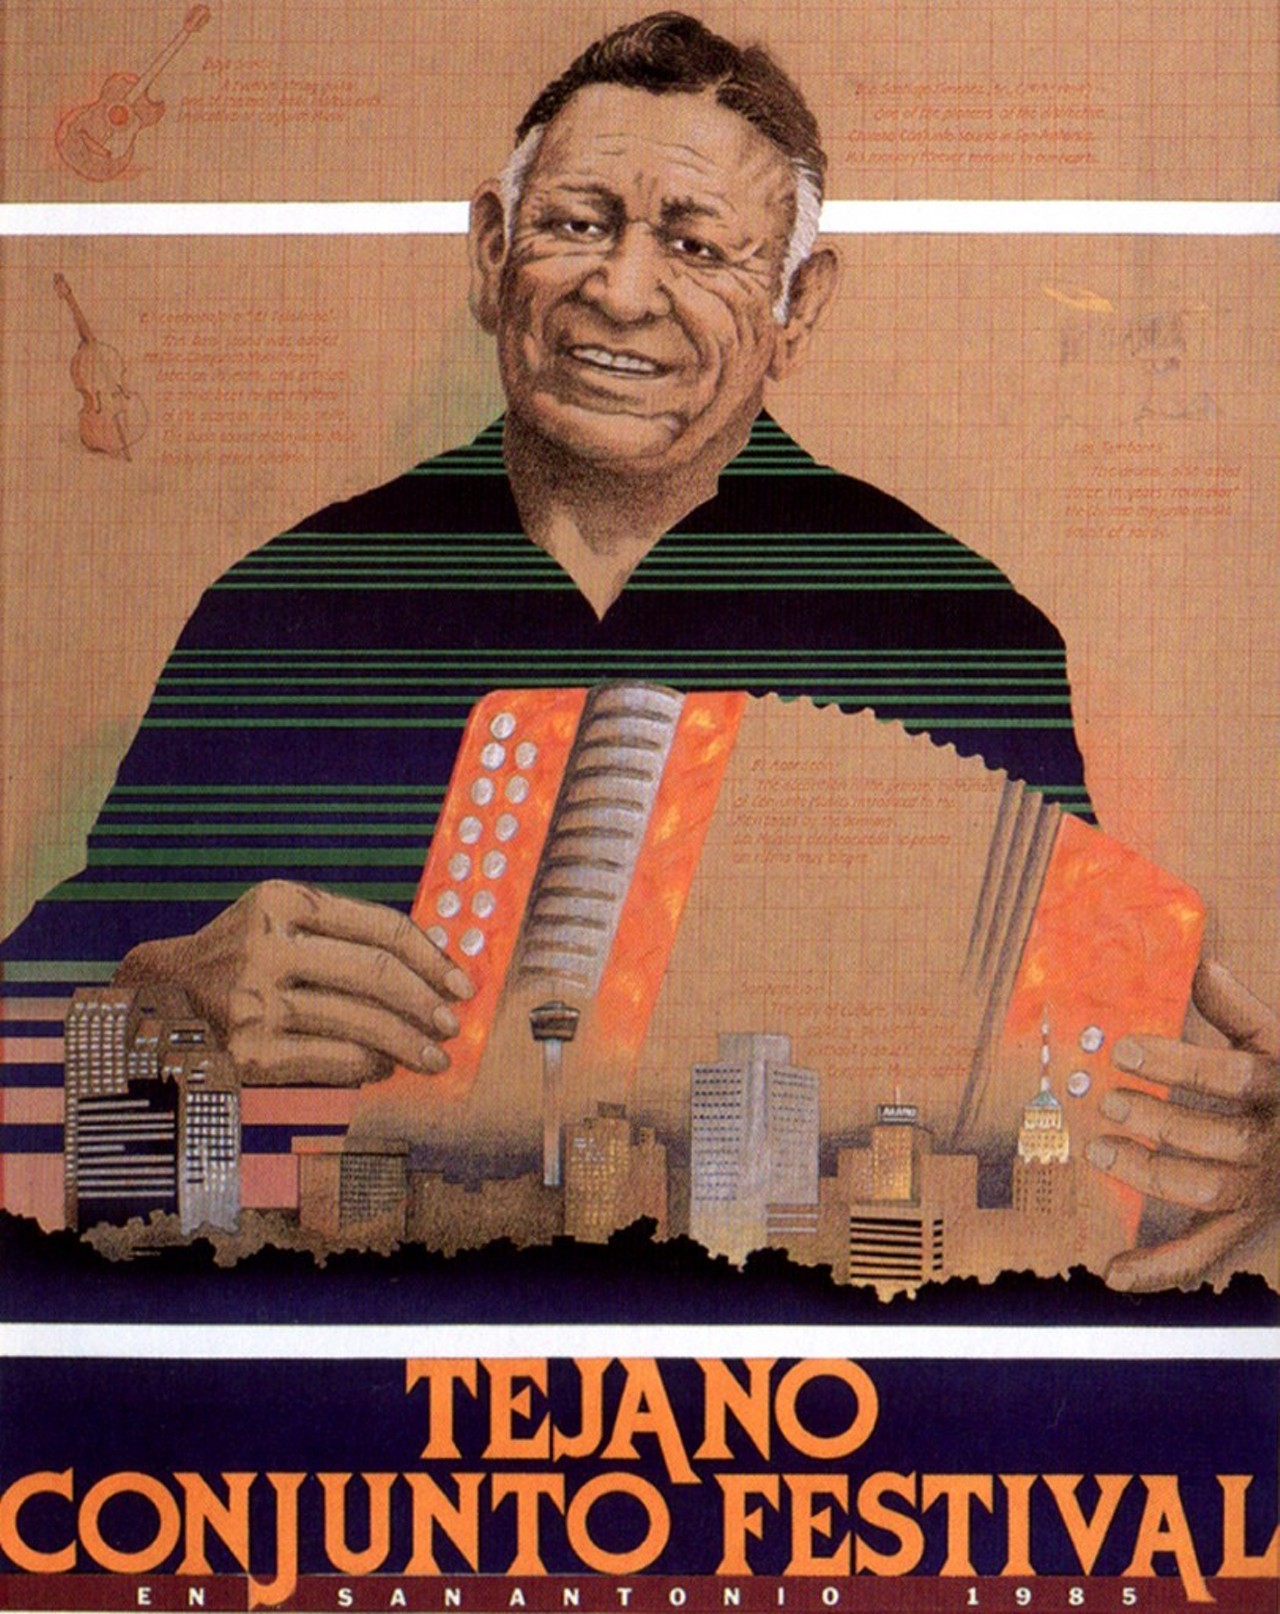 1985 Tejano Conjunto Festival poster by Roberto B. Sosa